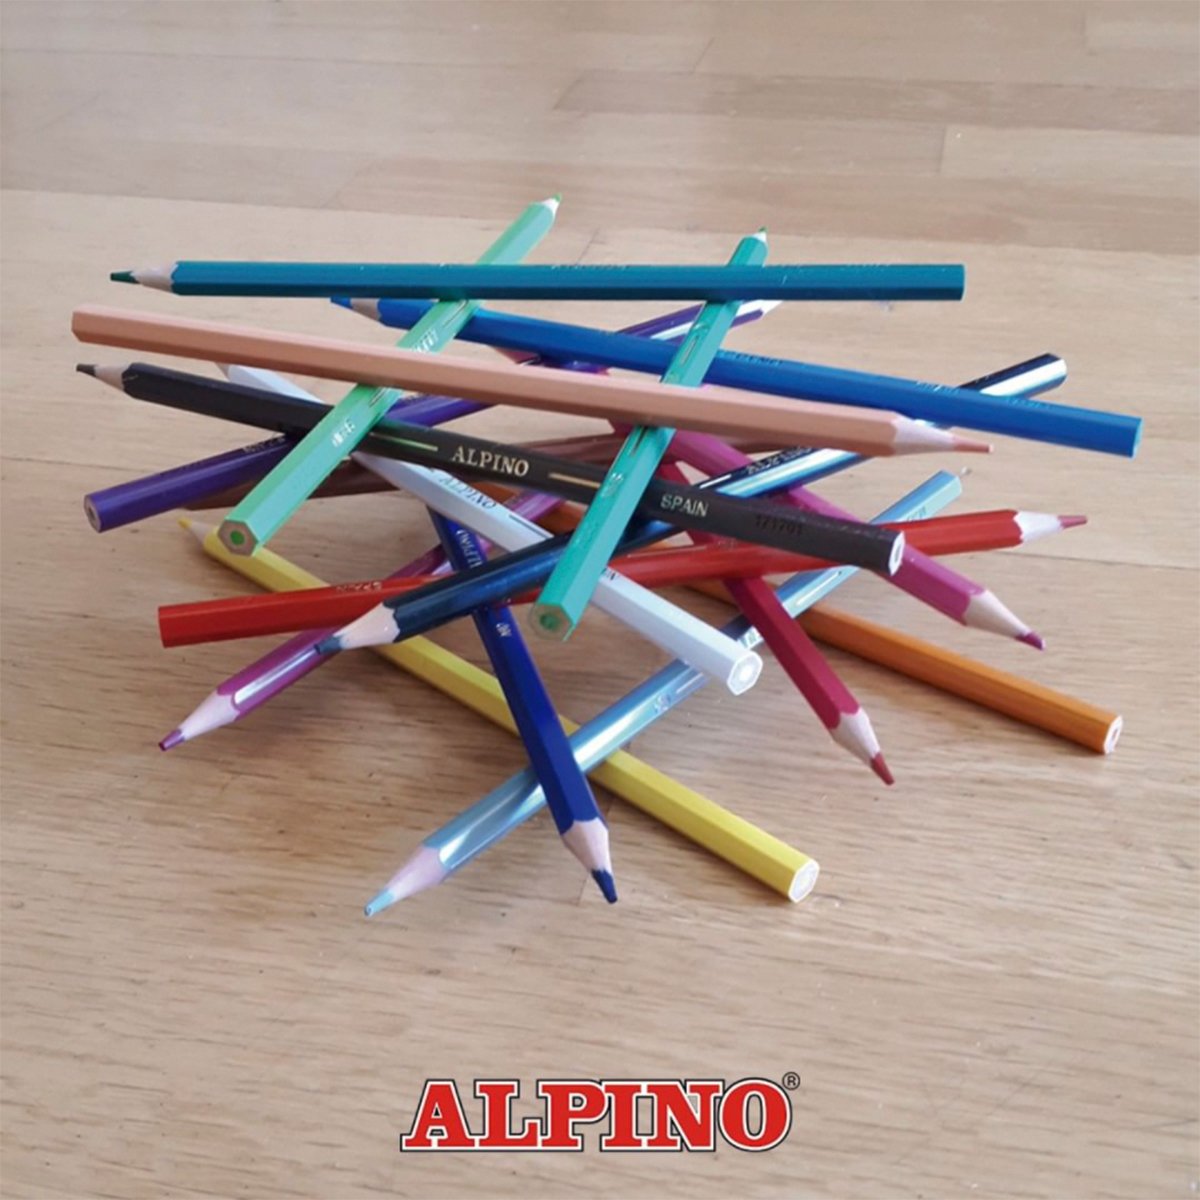 ALPINO - Estuche de 12 Lápices de Colores Escolares con Bandeja Deslizable, sin Madera